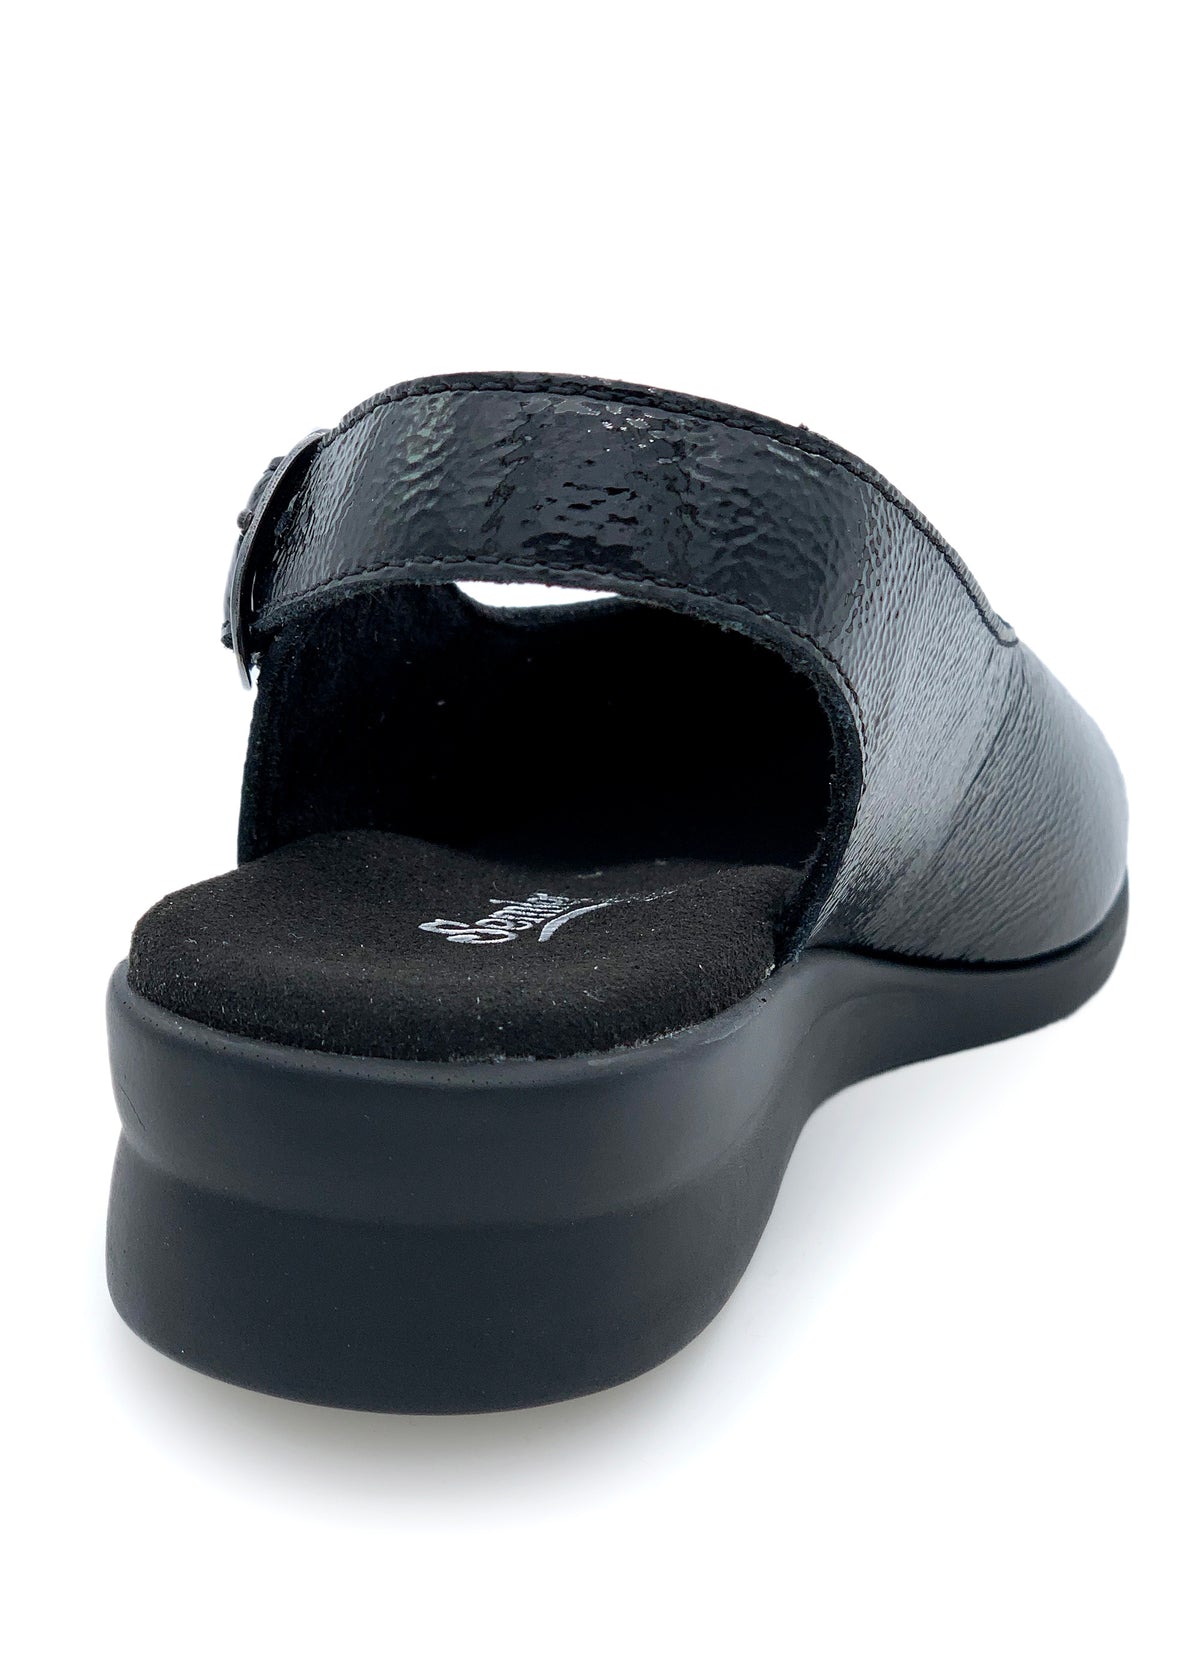 Sandaalit - musta kiiltonahka